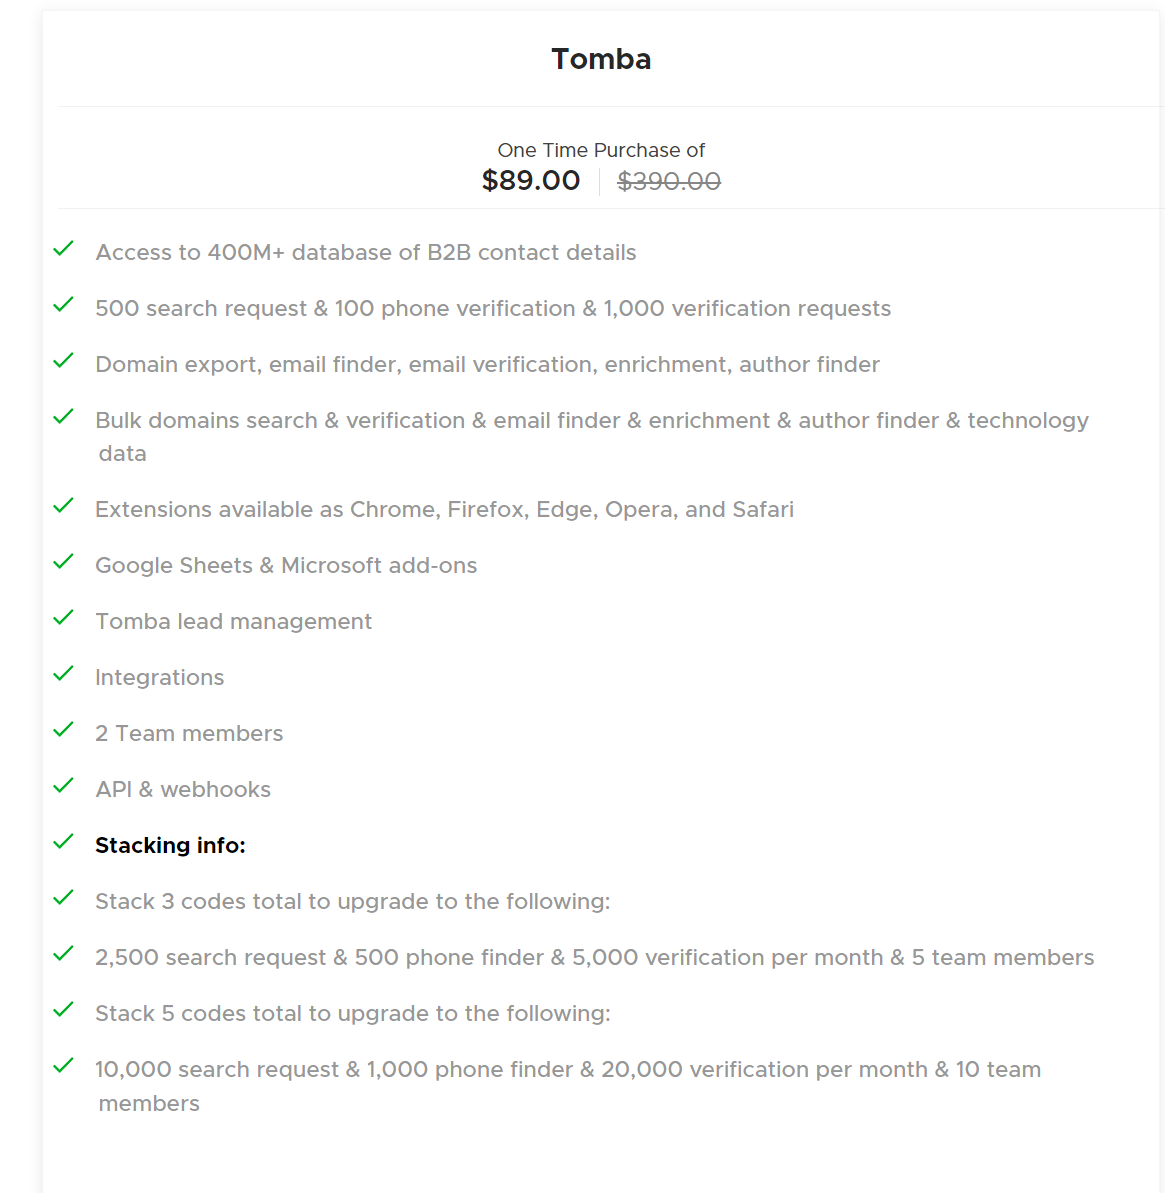 Tomba.io - Lifetime Deal